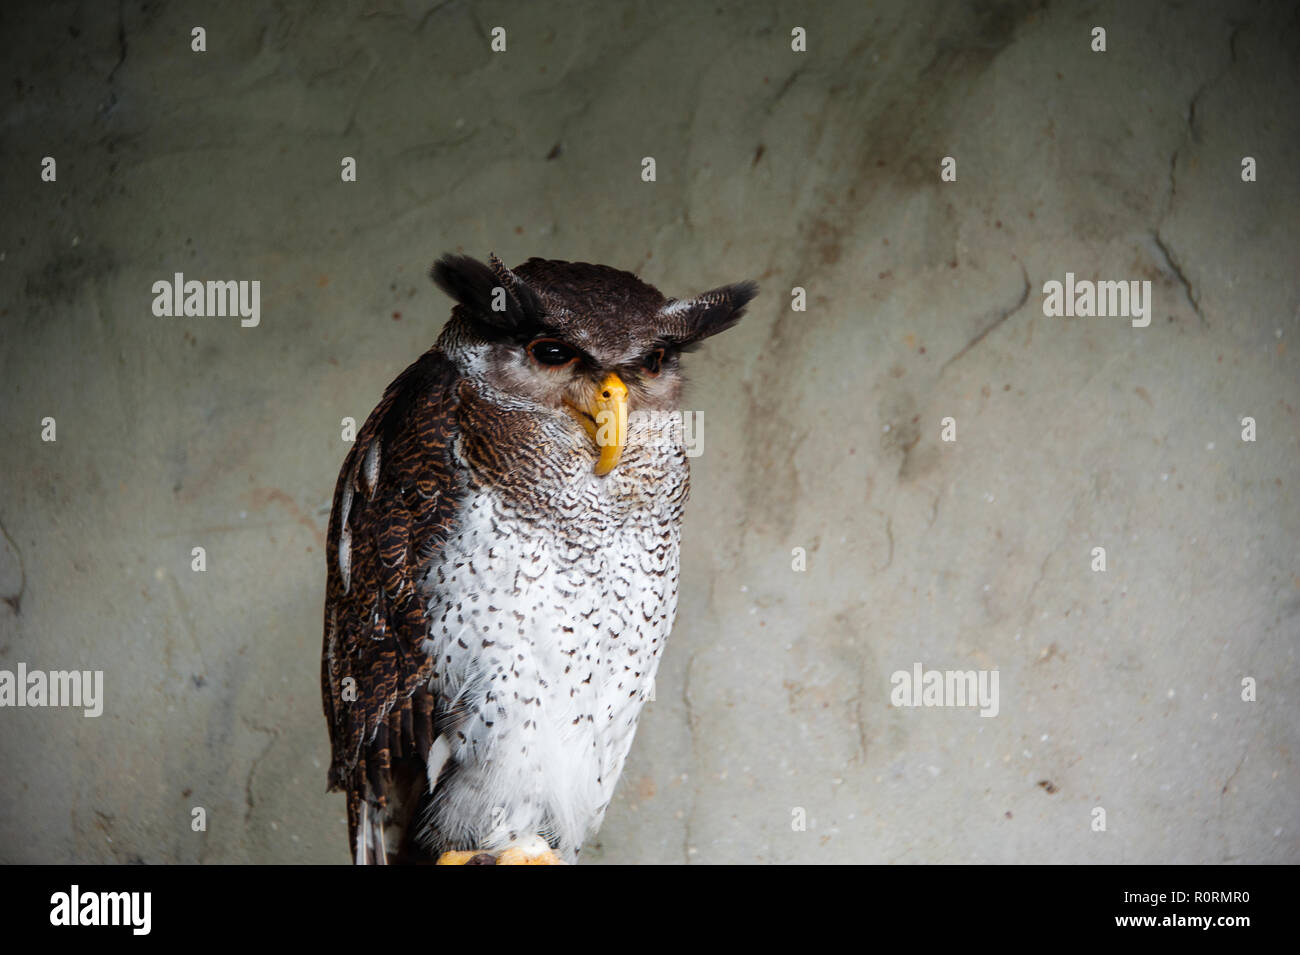 Portrait of a Malay or barred eagle-owl (Bubo sumatranus). Stock Photo